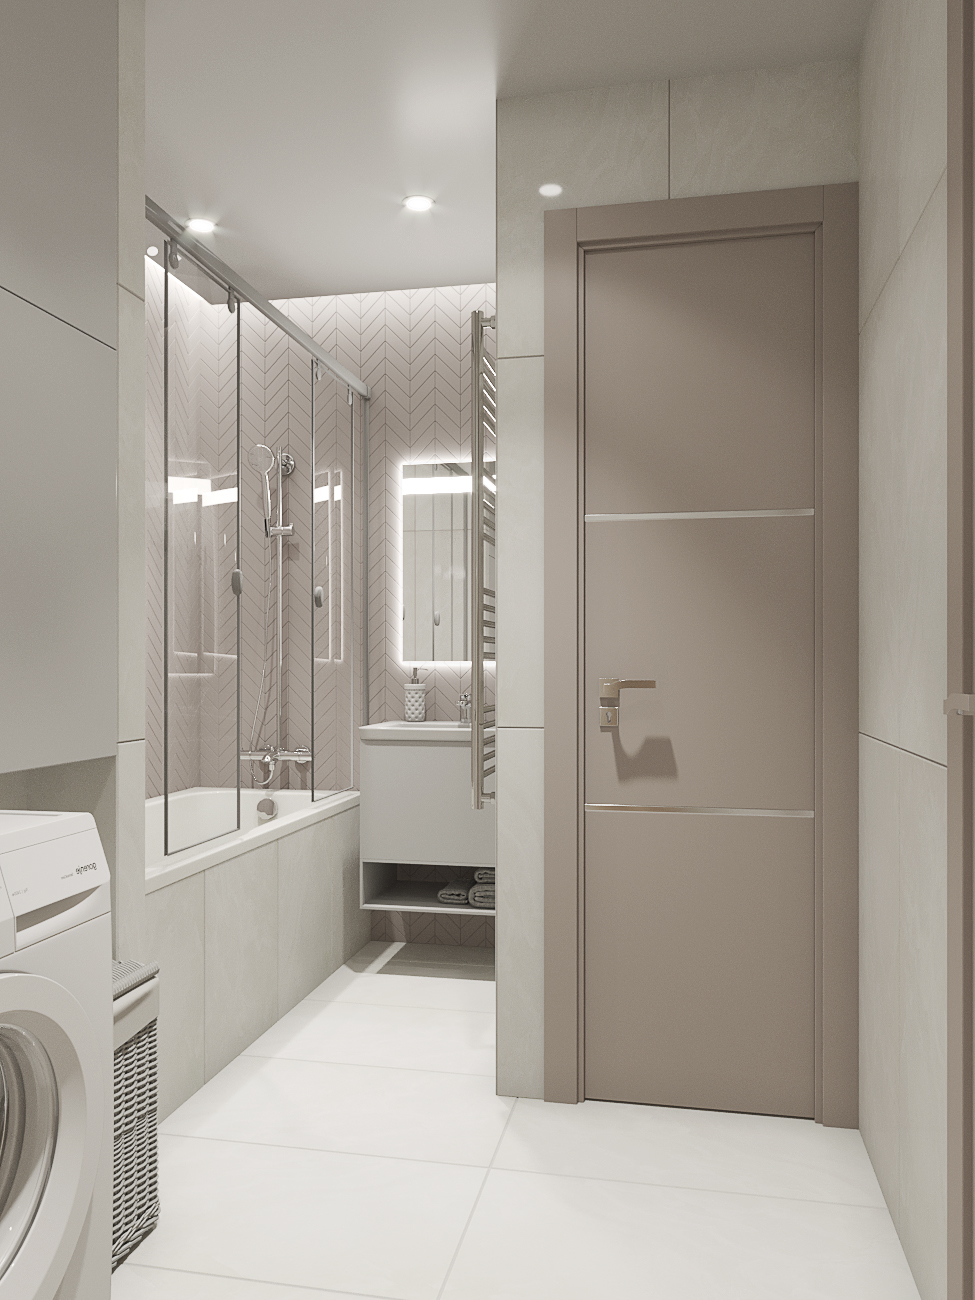 Фото № 2: Как обновить интерьер ванной комнаты без капитального ремонта: 7 идей